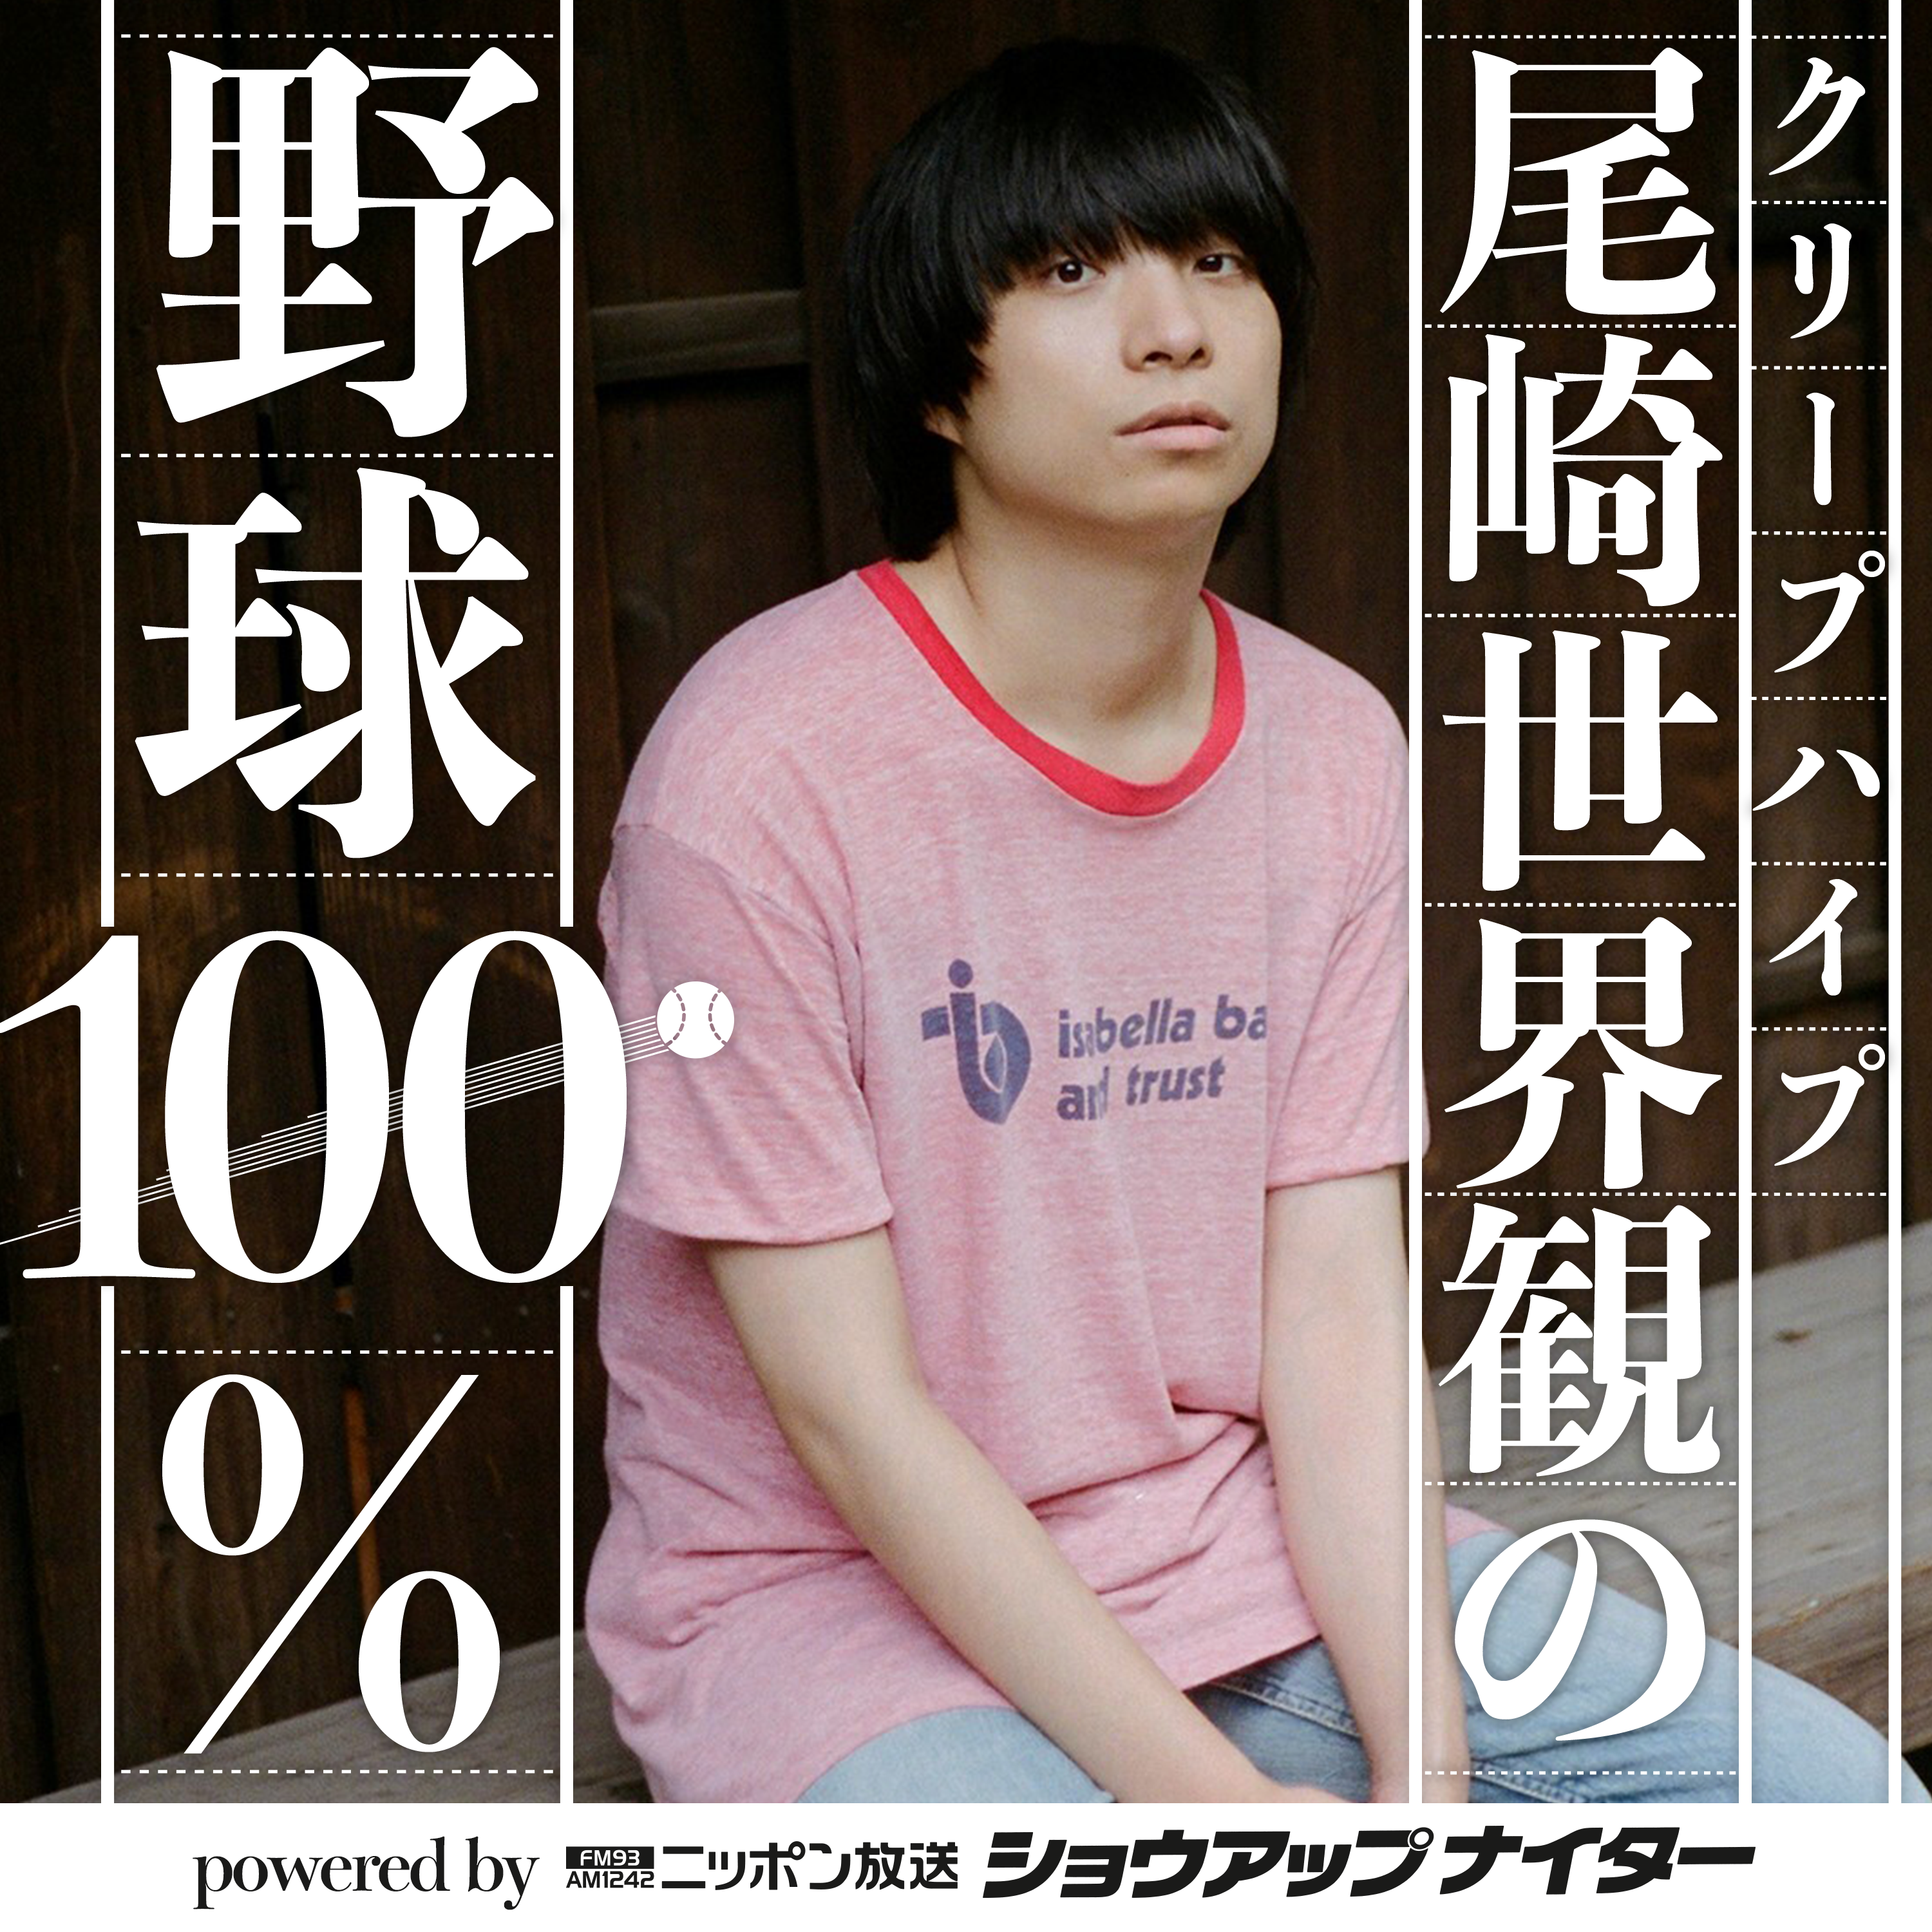 【第1回】クリープハイプ尾崎世界観の野球100% powered by ニッポン放送ショウアップナイター シーズン1